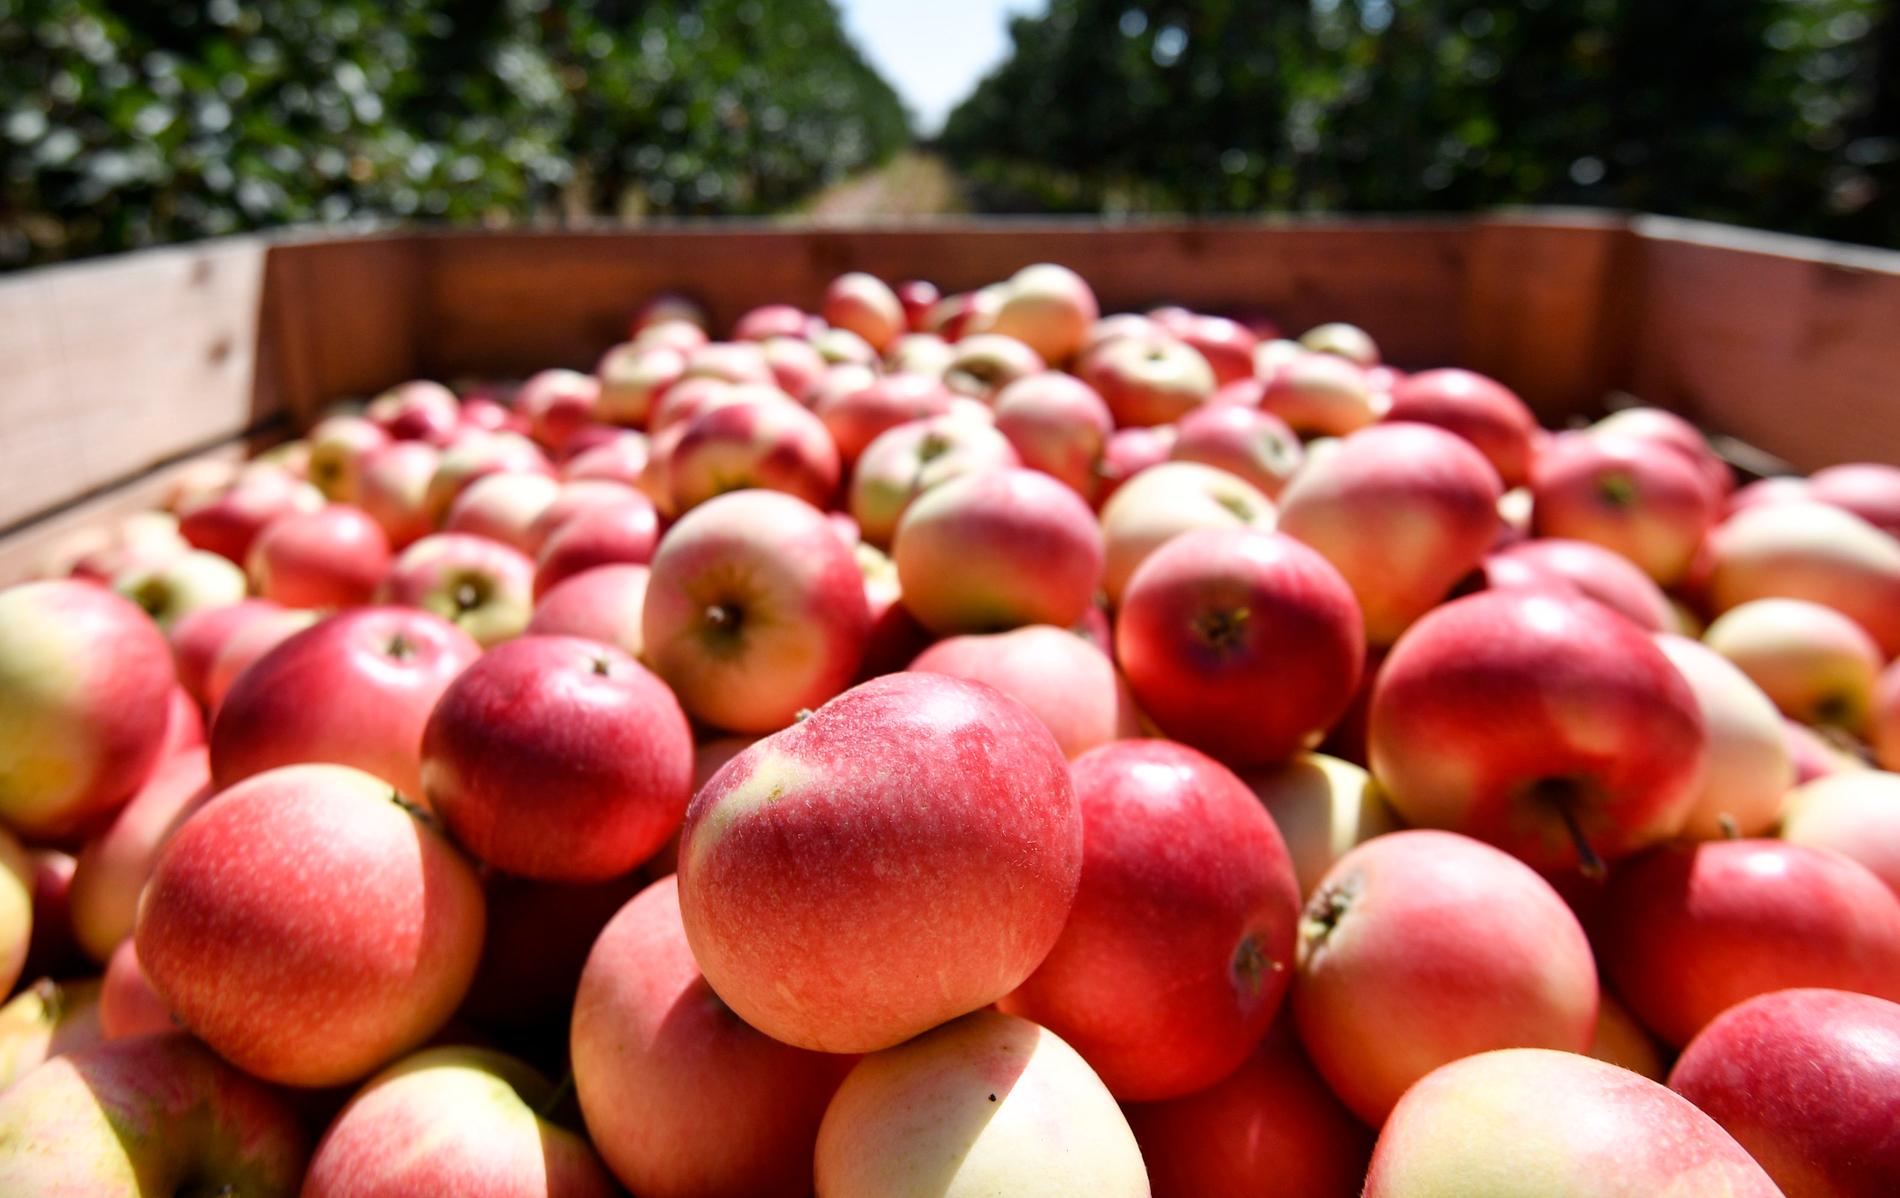 En skånsk fruktsprit gjord på äpplen måste byta namn på grund av alltför stora likheter med det skyddade franska varunamnet calvados, enligt en dom i förvaltningsrätten. Arkivbild.